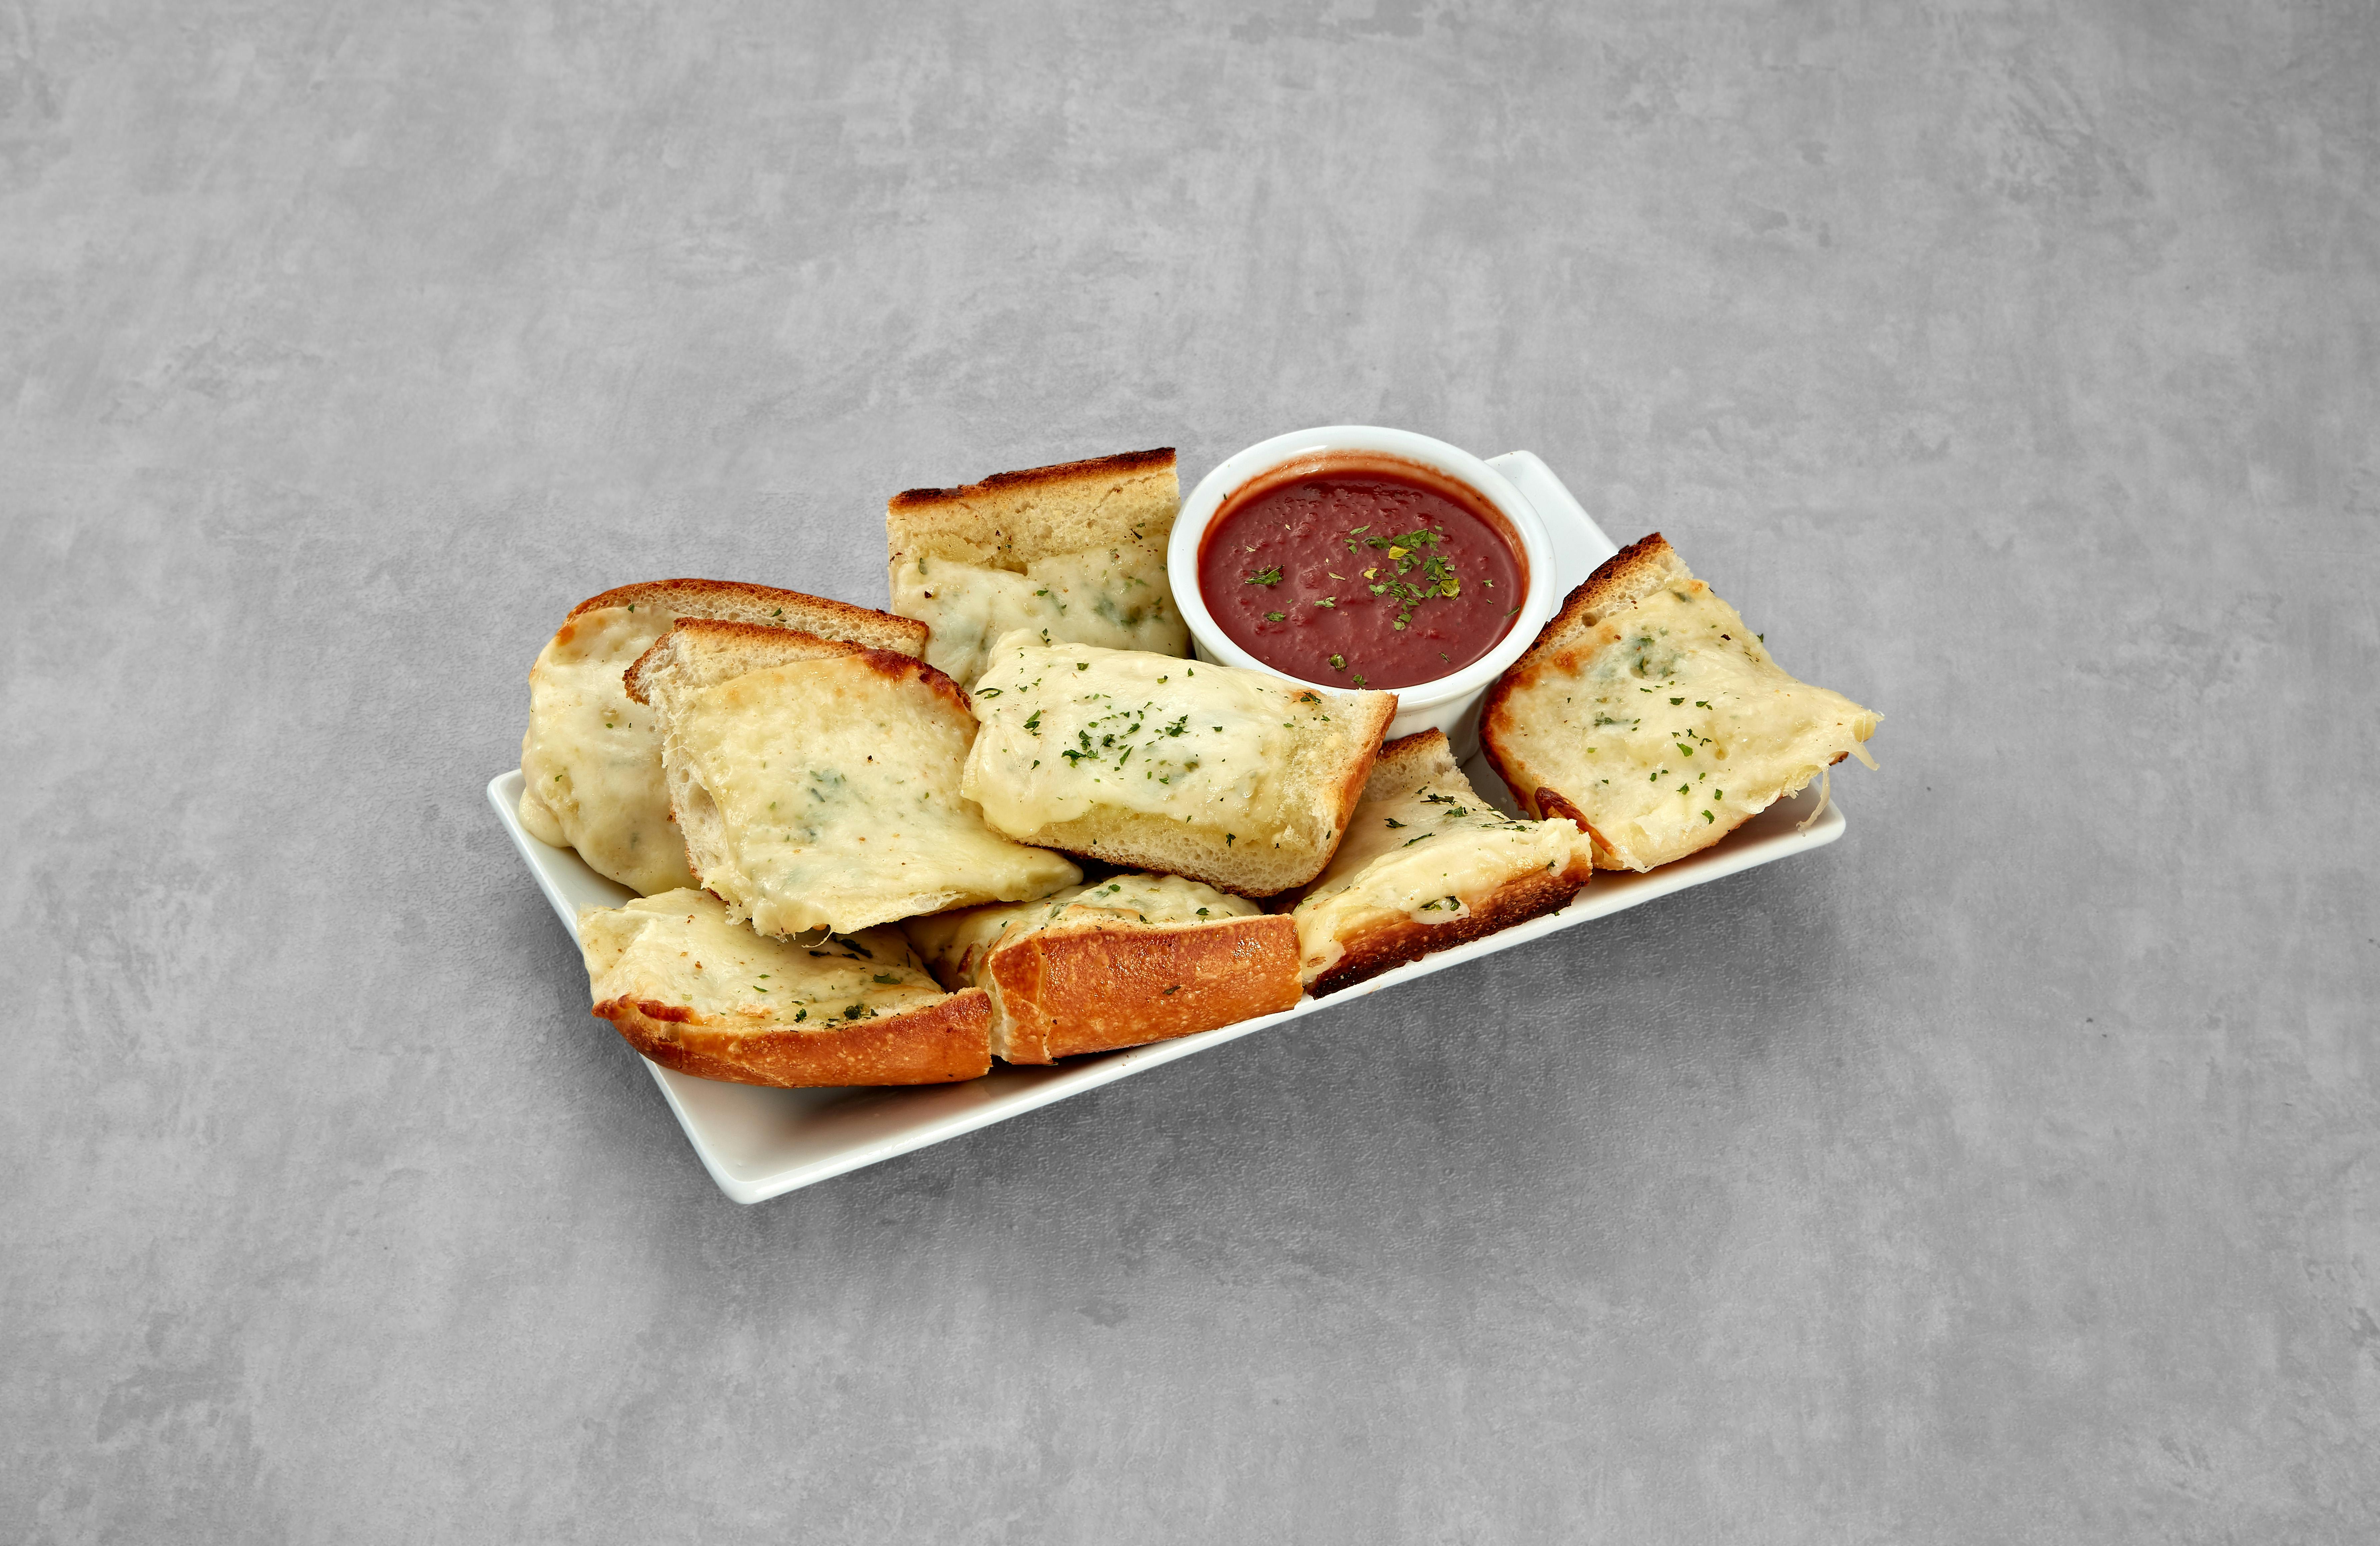 Garlic Bread with Mozzarella from Mario's Pizzeria in Seaford, NY